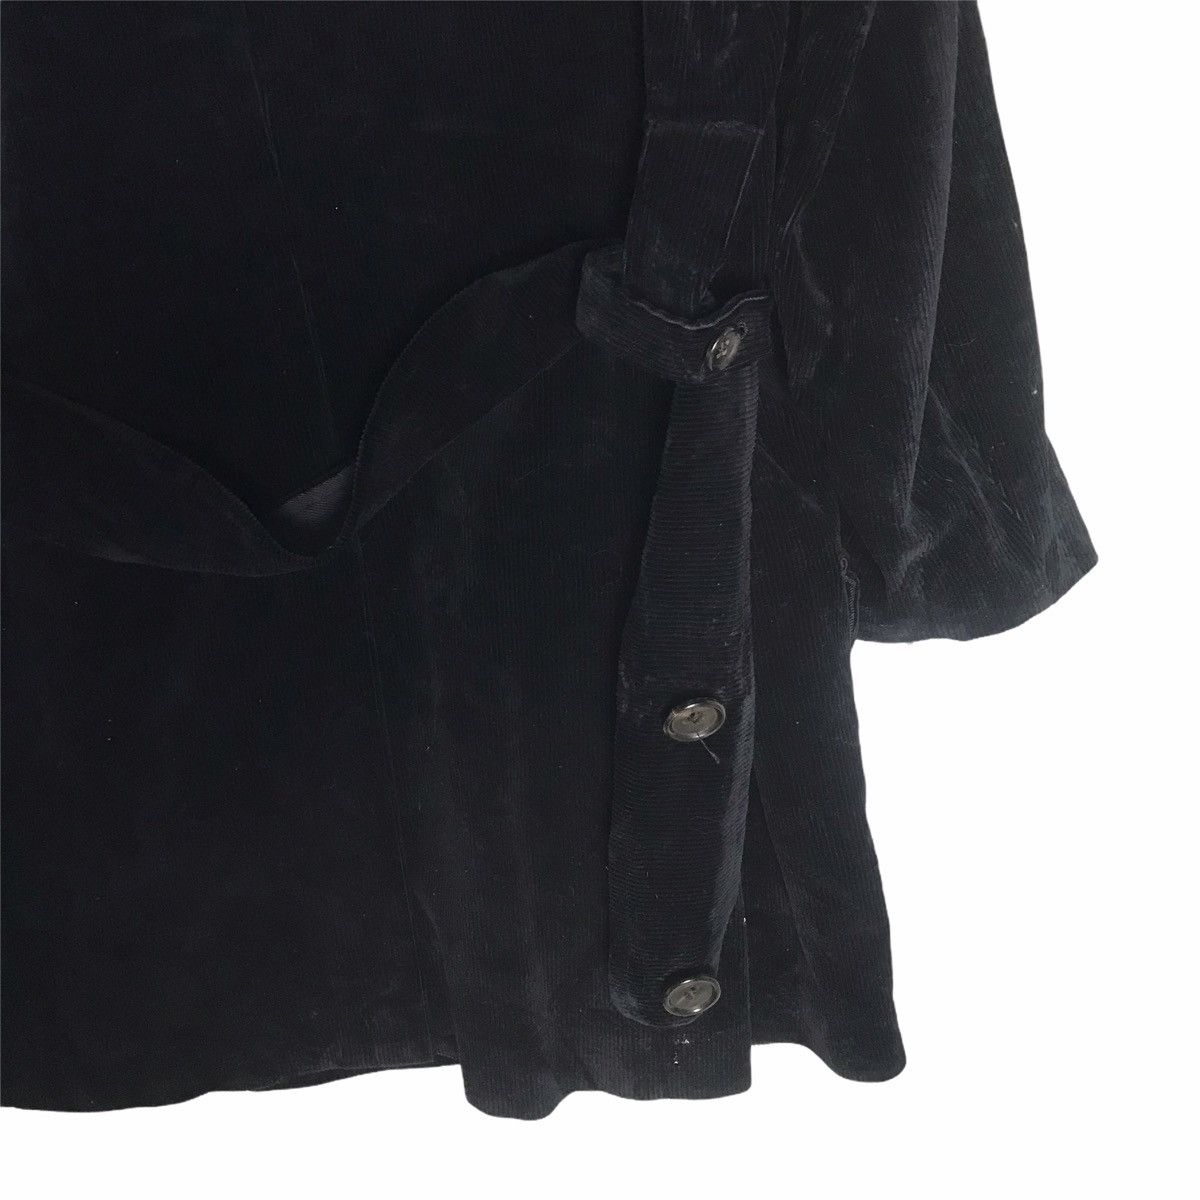 Yohji Yamamoto pour homme oversize black curdoroy coat - 4